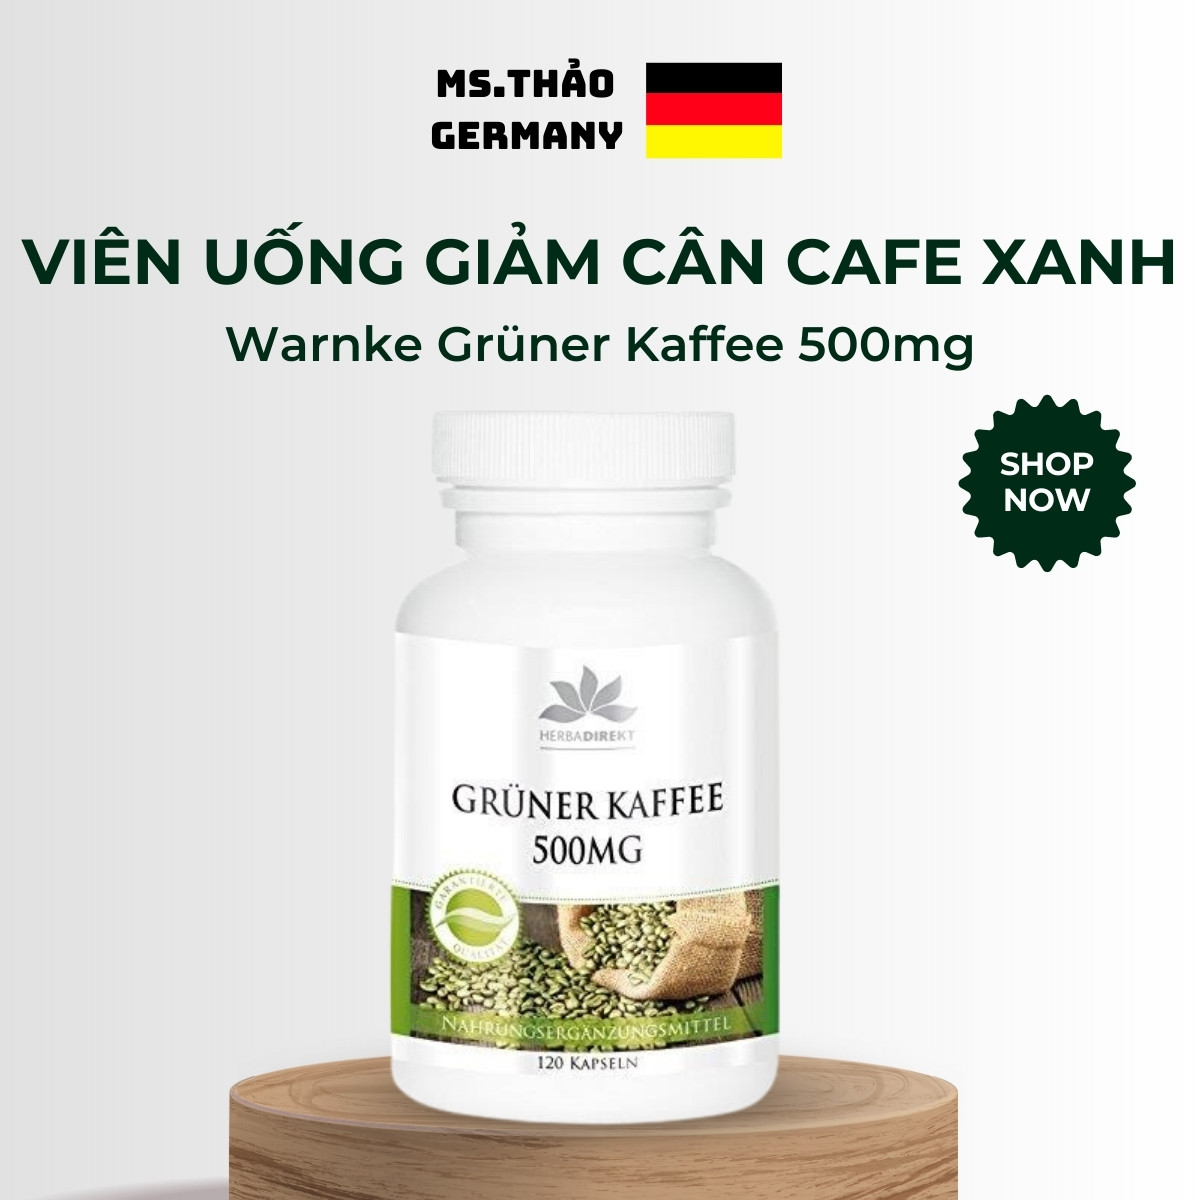 Viên Uống Giảm Cân Cafe Xanh, Warnke Gruner Kaffee 500mg, Giảm Cân An Toàn